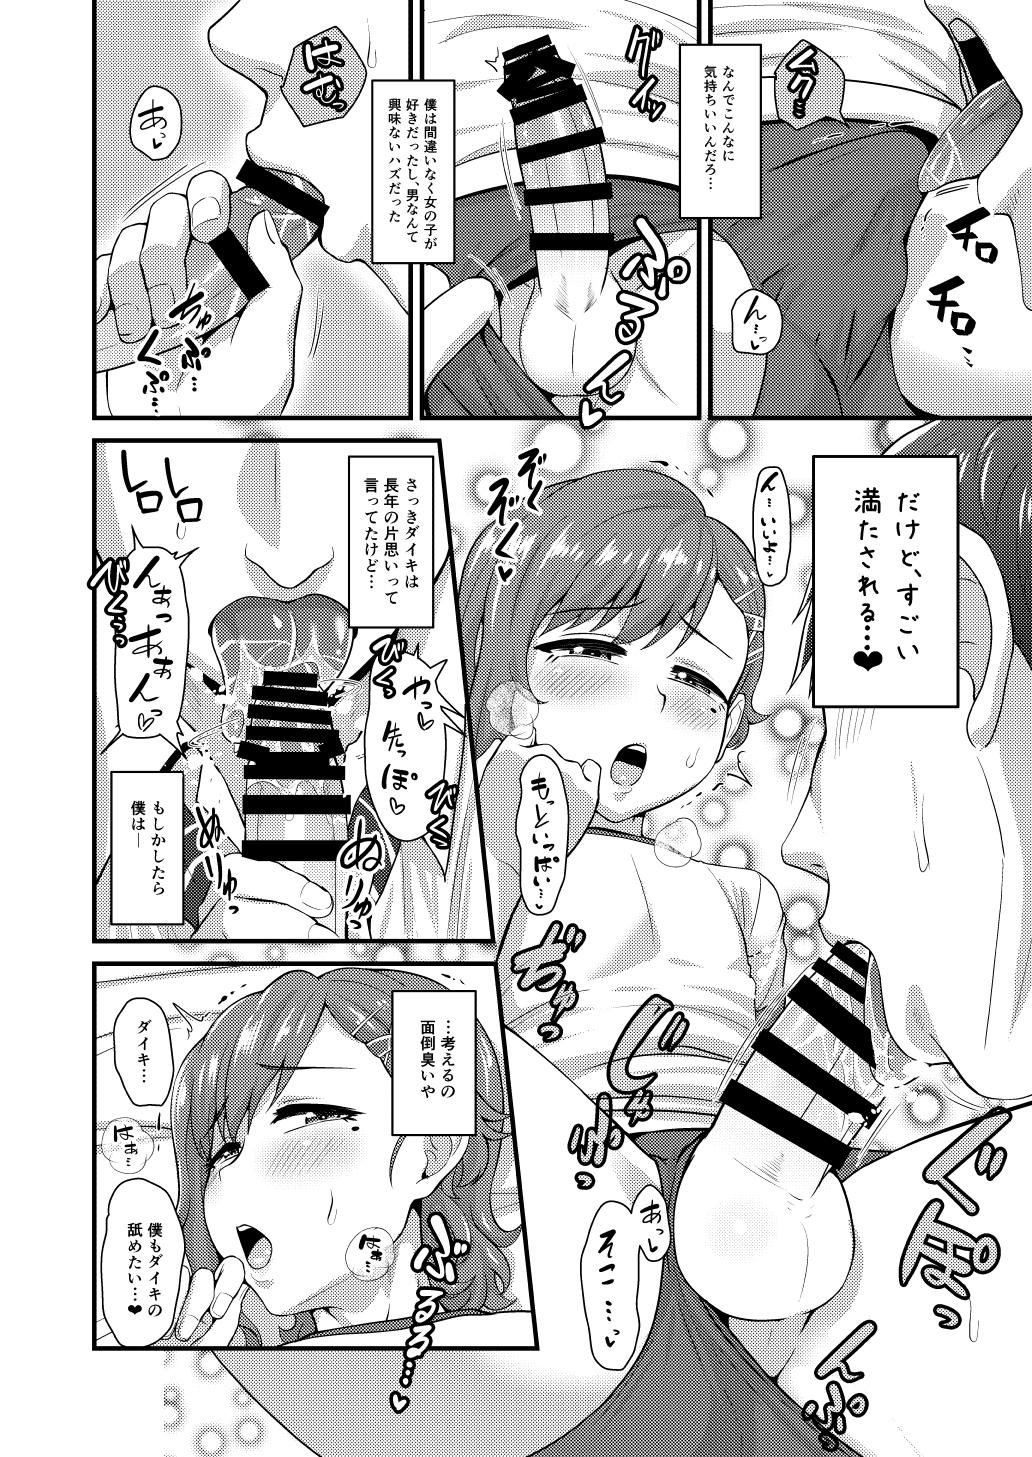 Porra Aitsu no Toriko ni Natta Boku. Fuyu Storyline - Page 9